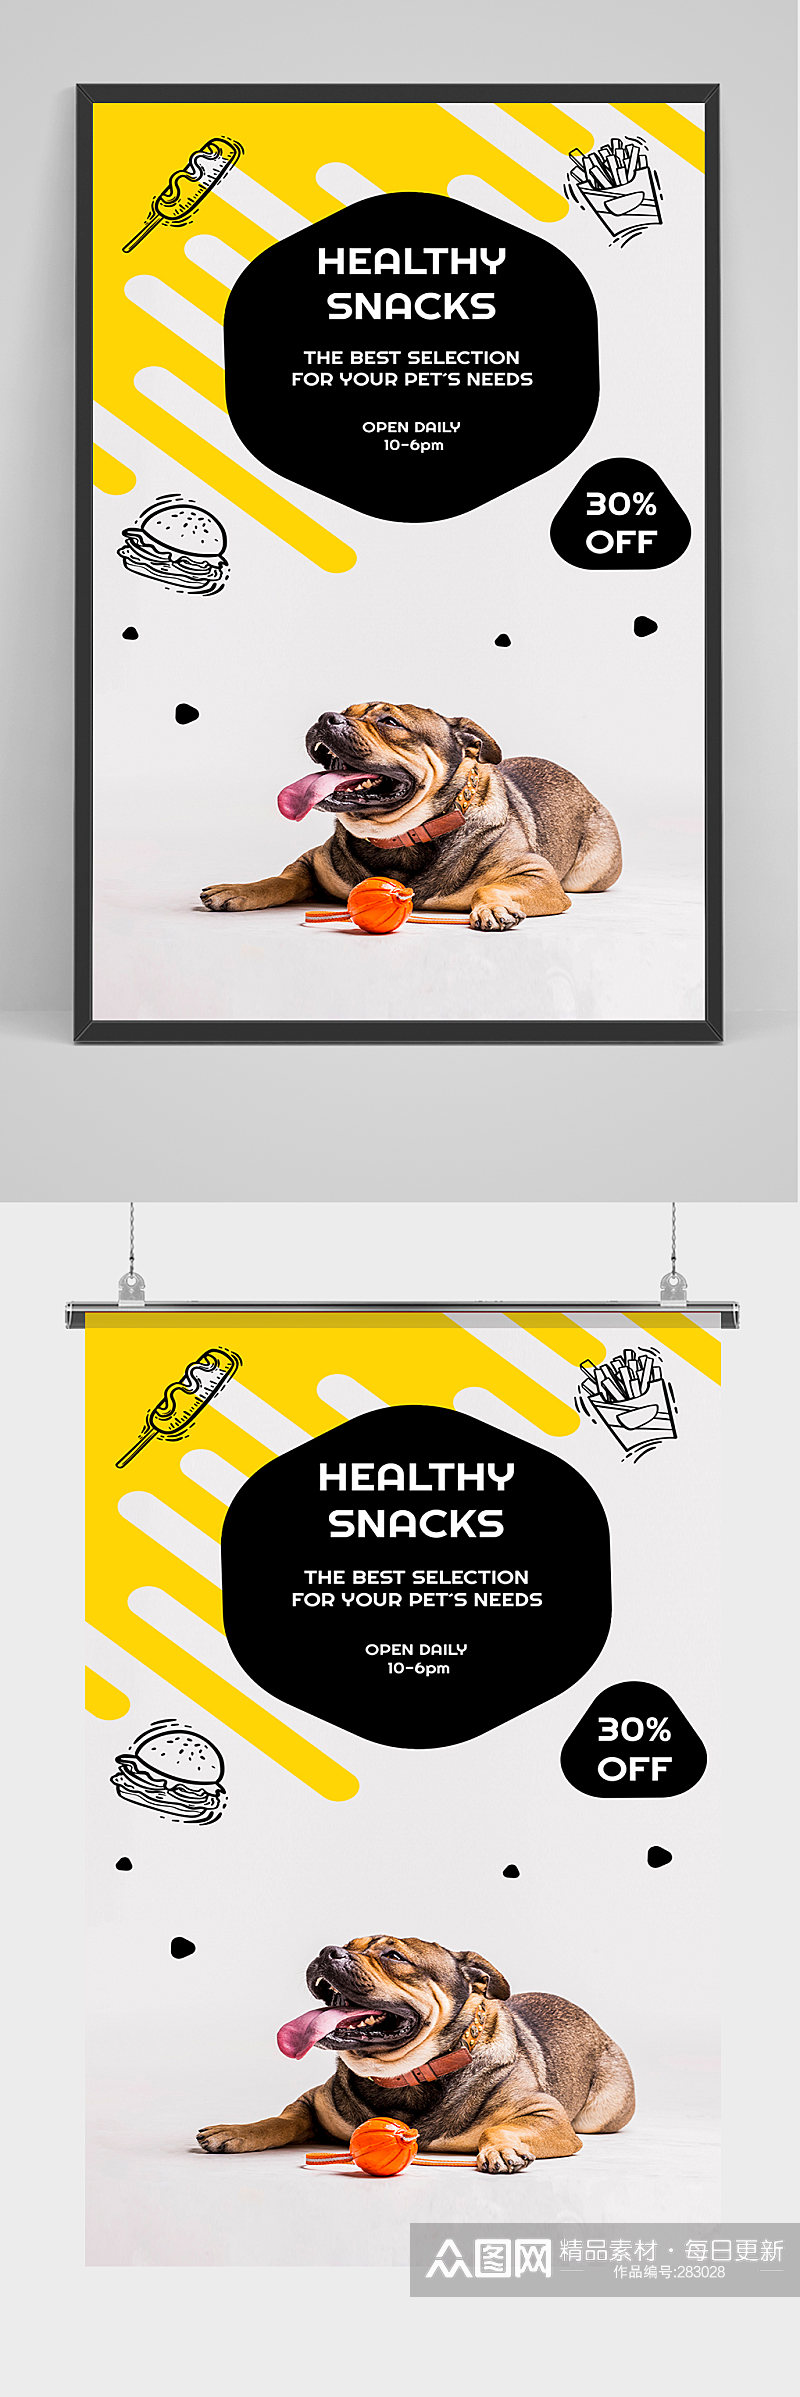 黄黑可爱小狗海报设计素材